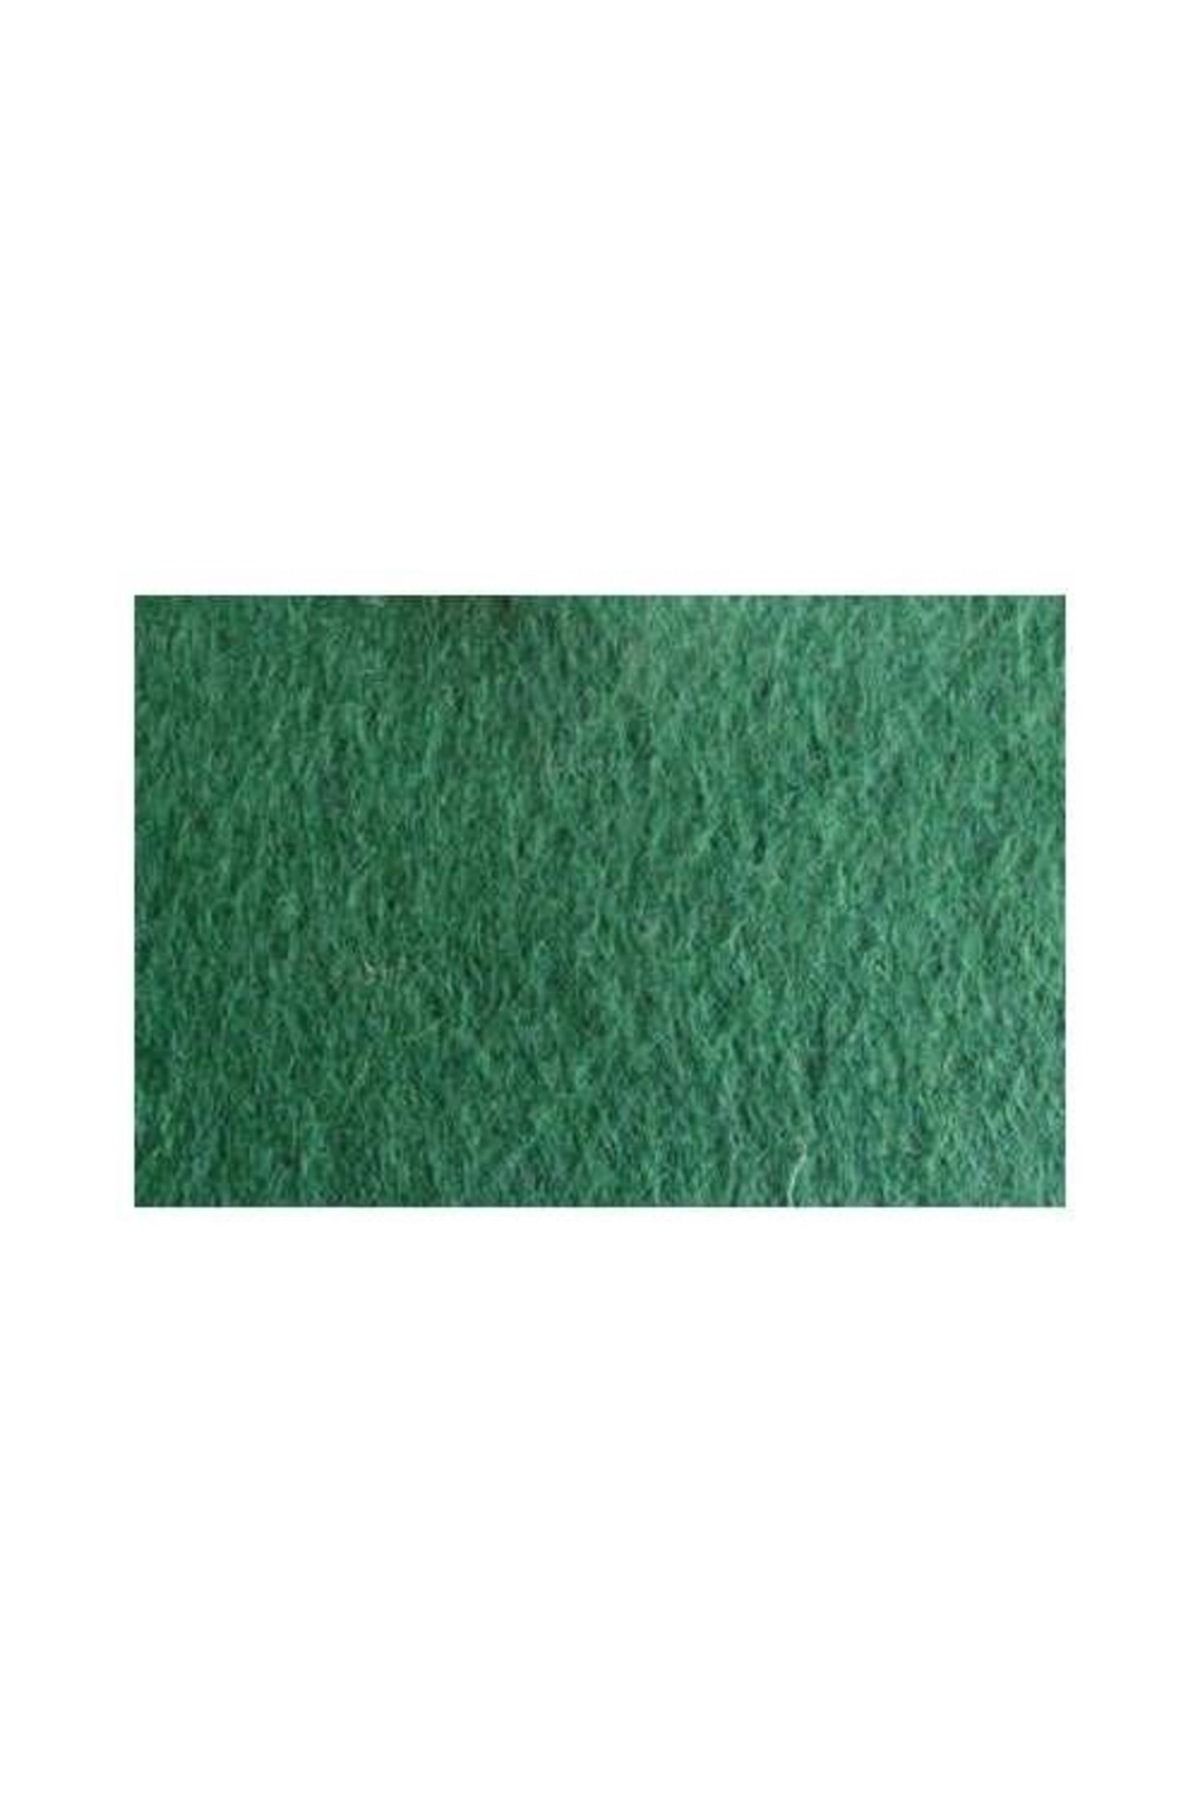 Resun / Unistar Yeşil Iç Filtre Süngeri 16.5*13cm